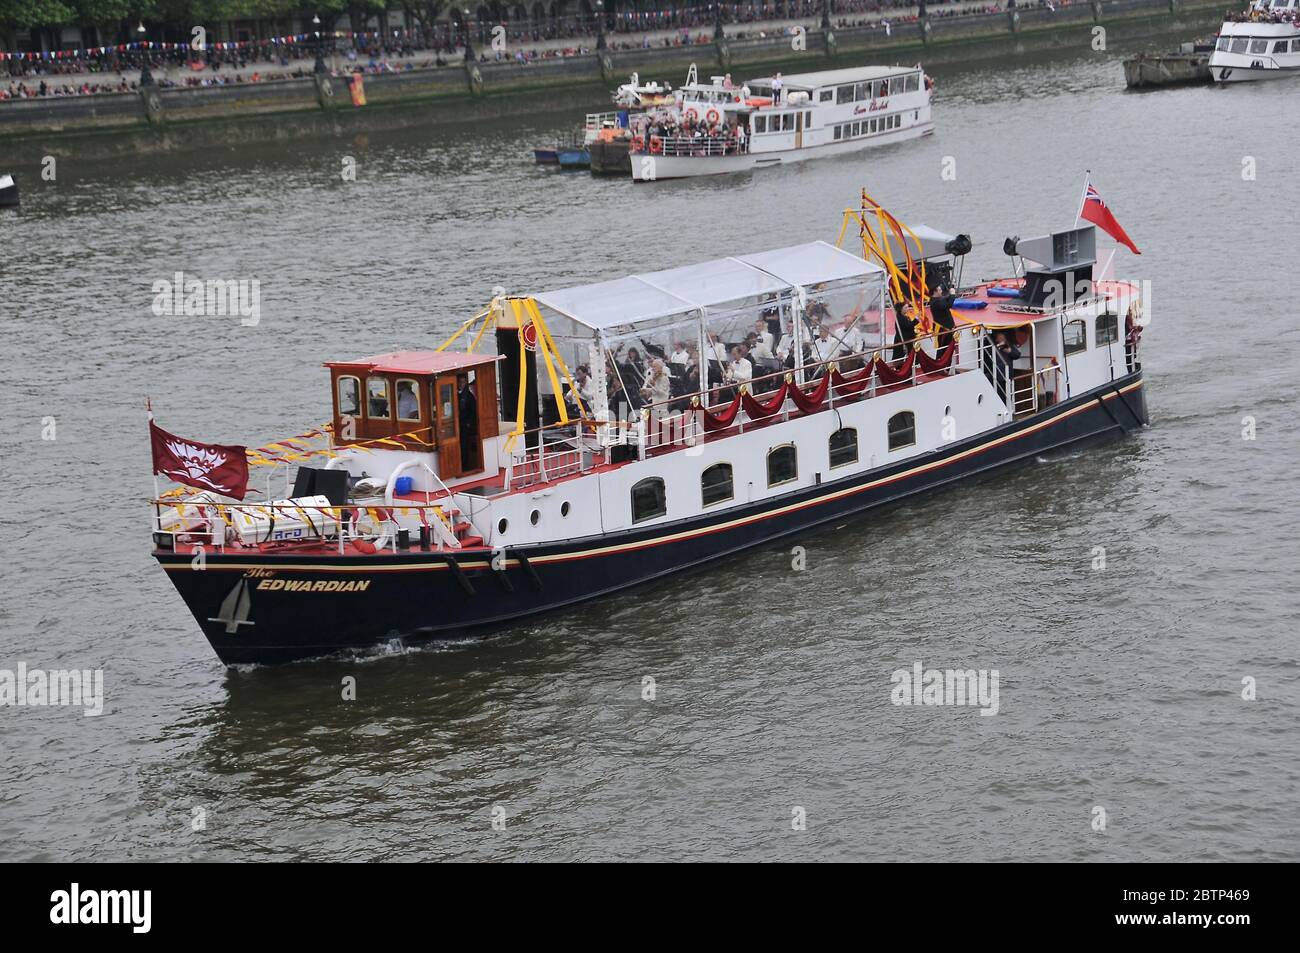 Die Thames Diamond Jubilee Pageant war eine Parade am 3. Juni von 670 Booten auf dem tideway der Themse in London als Teil der Feierlichkeiten des Diamond Jubilee von Elizabeth 11. Die Königin, prinz Philip und andere Mitglieder der königlichen Familie waren an Bord von Schiffen, die an der Parade teilnahmen. Stockfoto